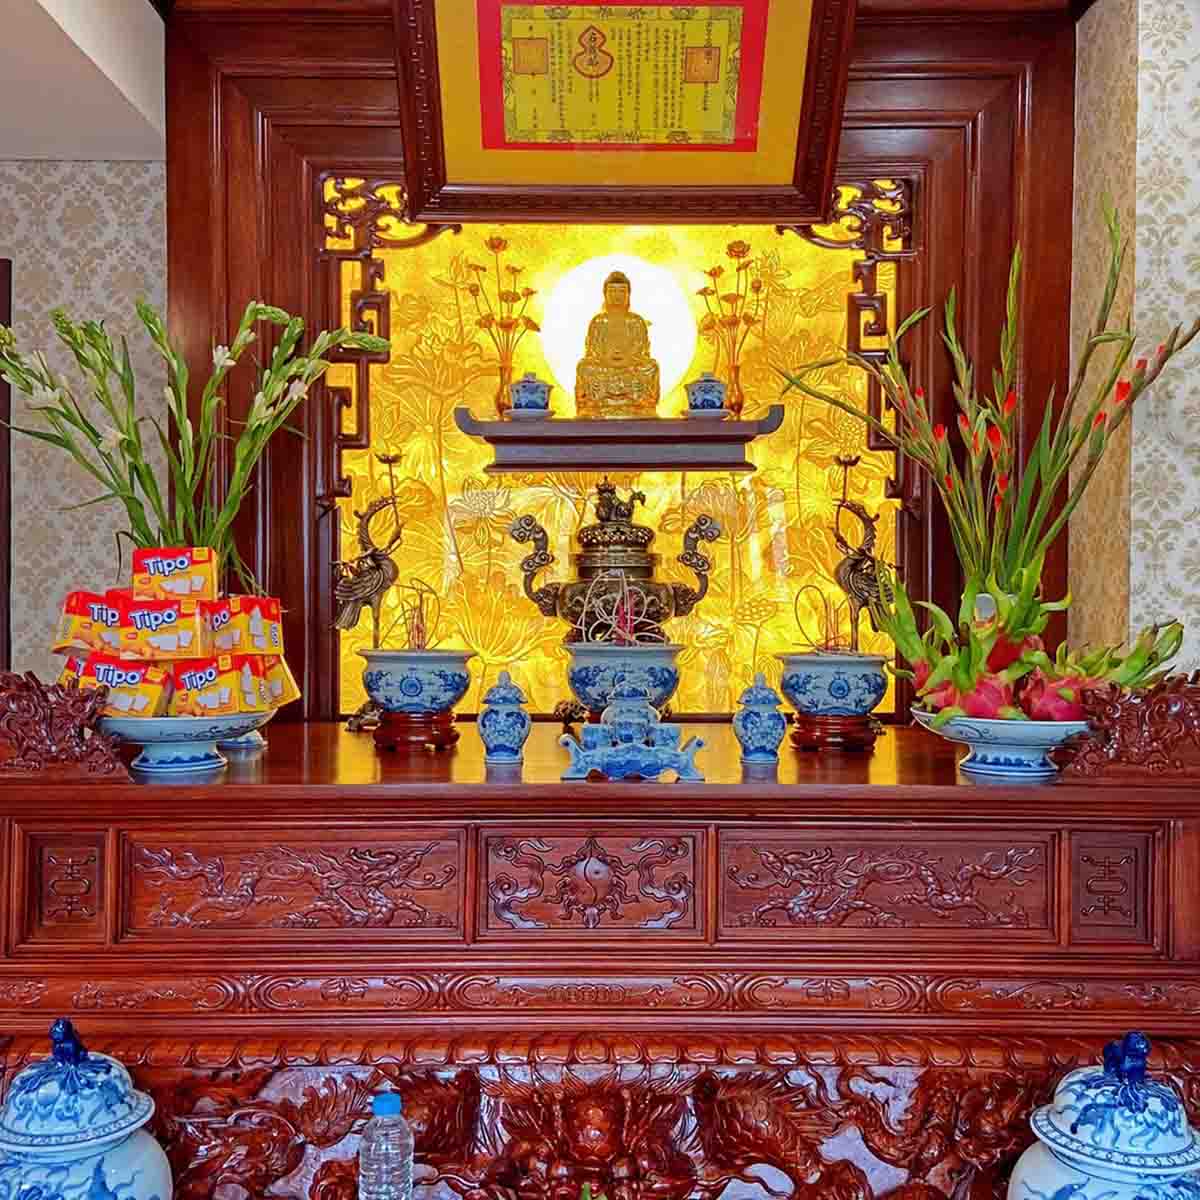 Bàn thờ Phật với ánh sáng dịu nhẹ. Nguồn: Fb Lan Anh Tran